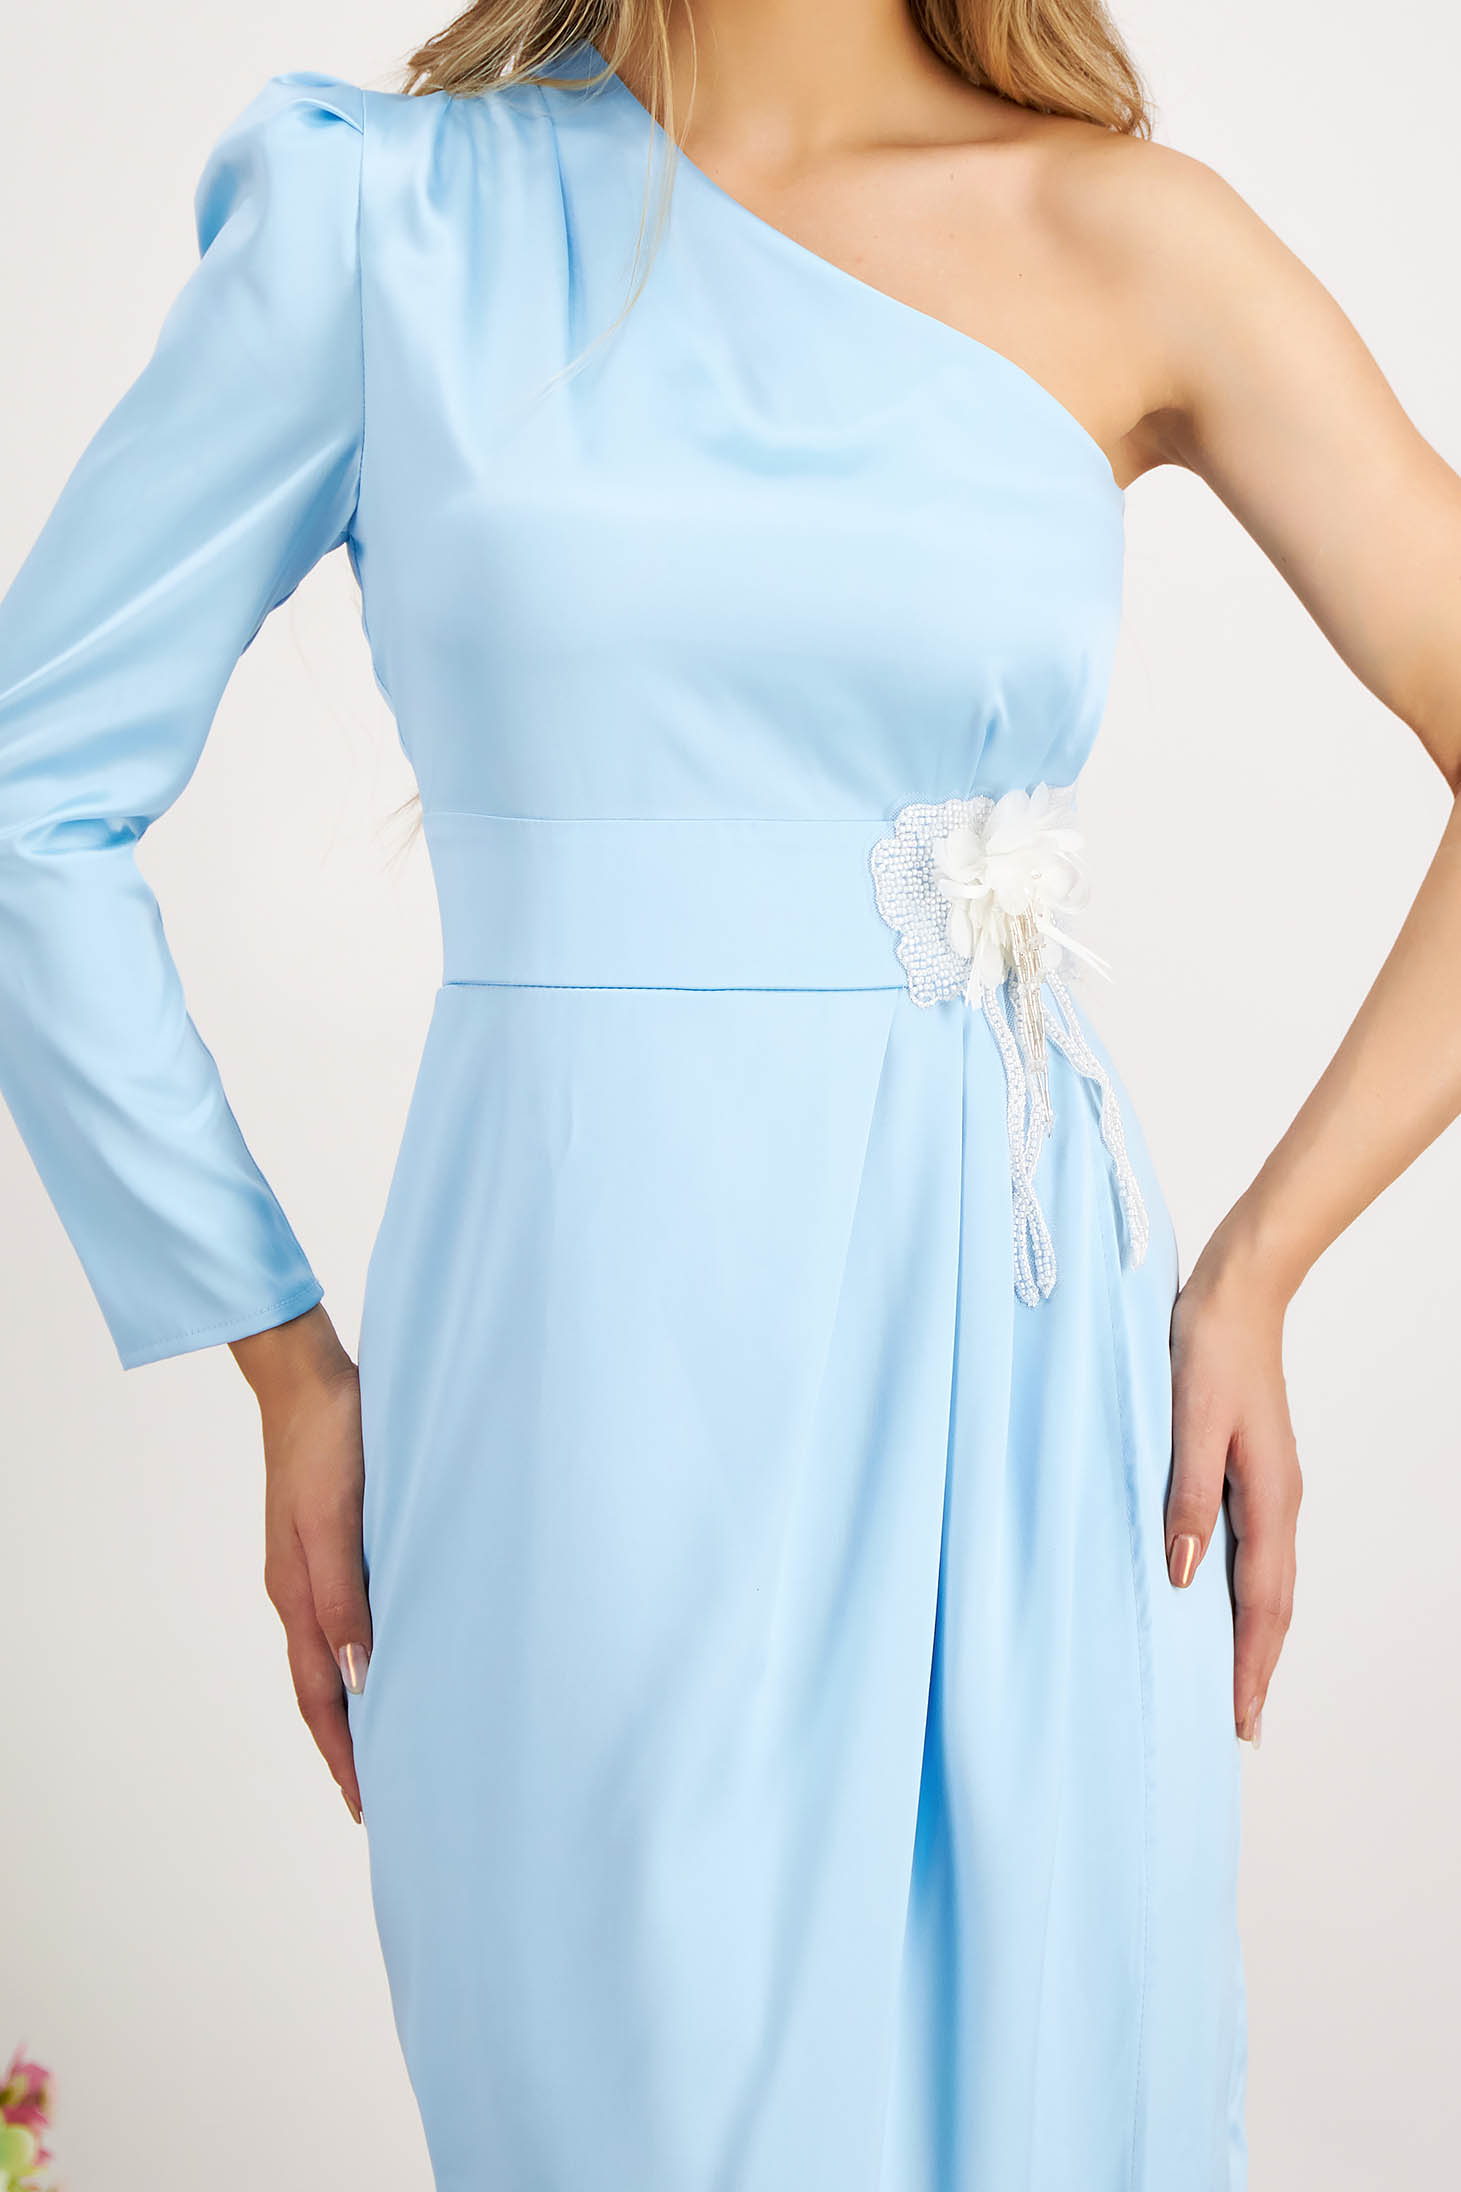 Rochie din satin albastru-deschis cu fusta petrecuta si aplicatii cu paiete in talie - Artista 5 - StarShinerS.ro